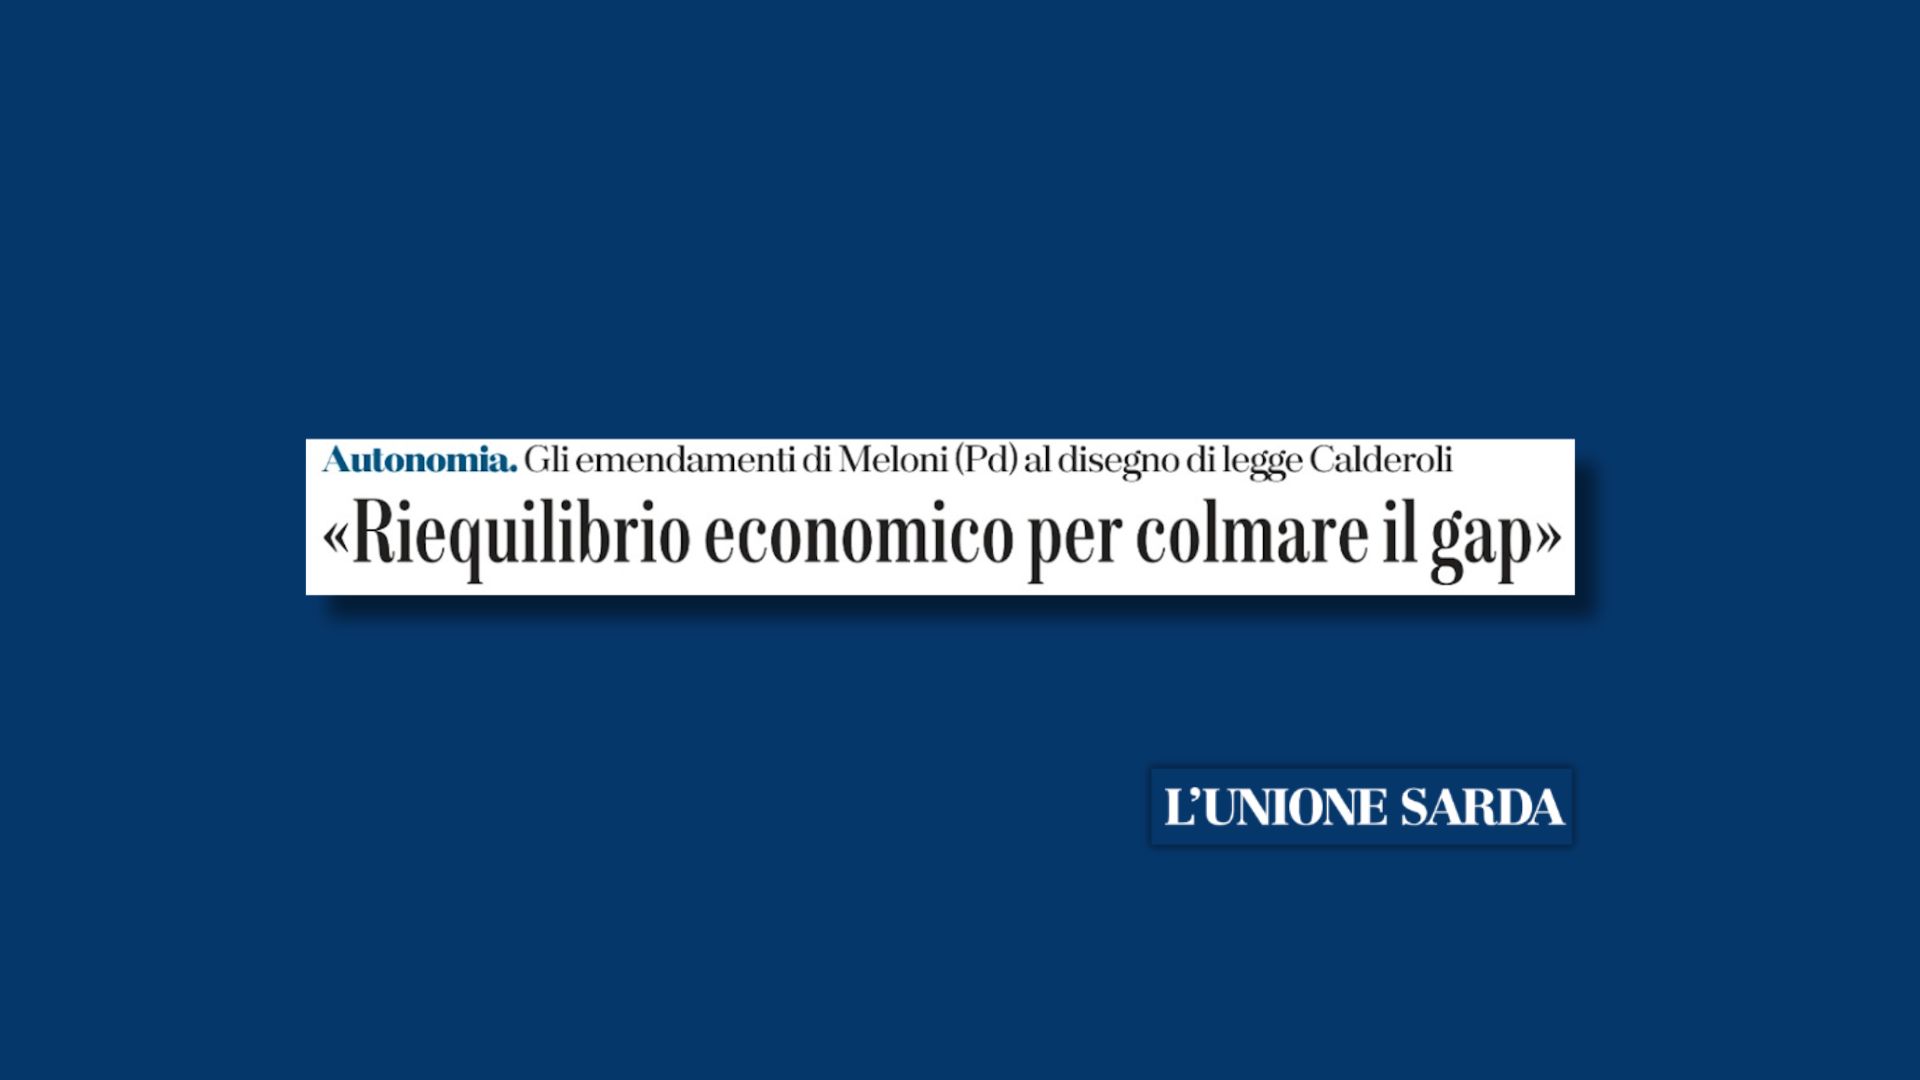 Autonomia. Gli emendamenti di Meloni (Pd) al disegno di legge Calderoli. “Riequilibrio economico per colmare il gap”